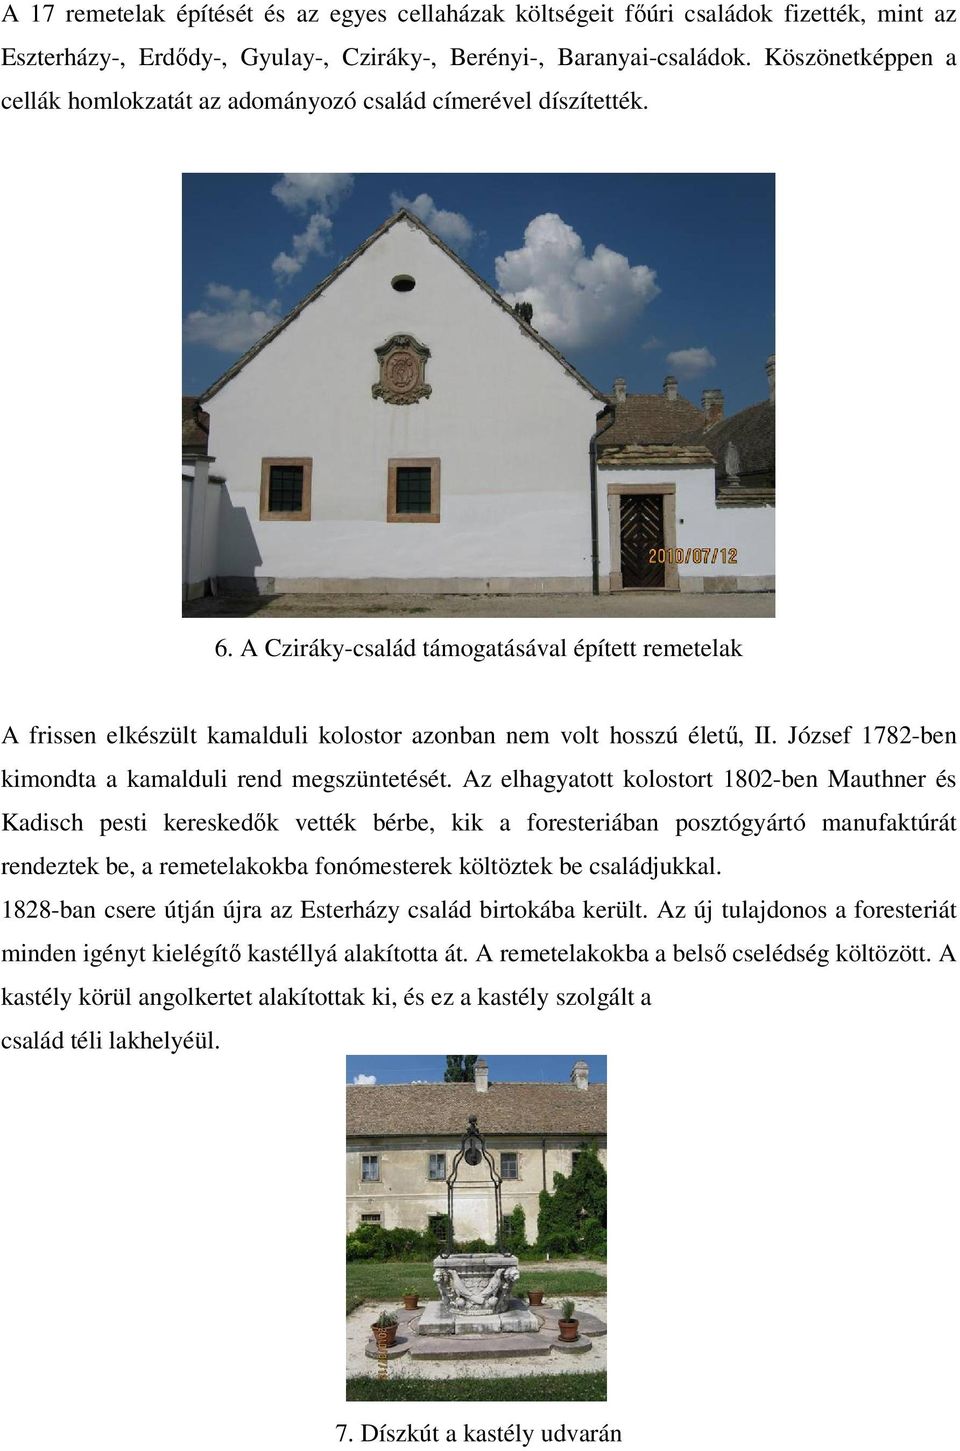 A Cziráky-család támogatásával épített remetelak A frissen elkészült kamalduli kolostor azonban nem volt hosszú életű, II. József 1782-ben kimondta a kamalduli rend megszüntetését.